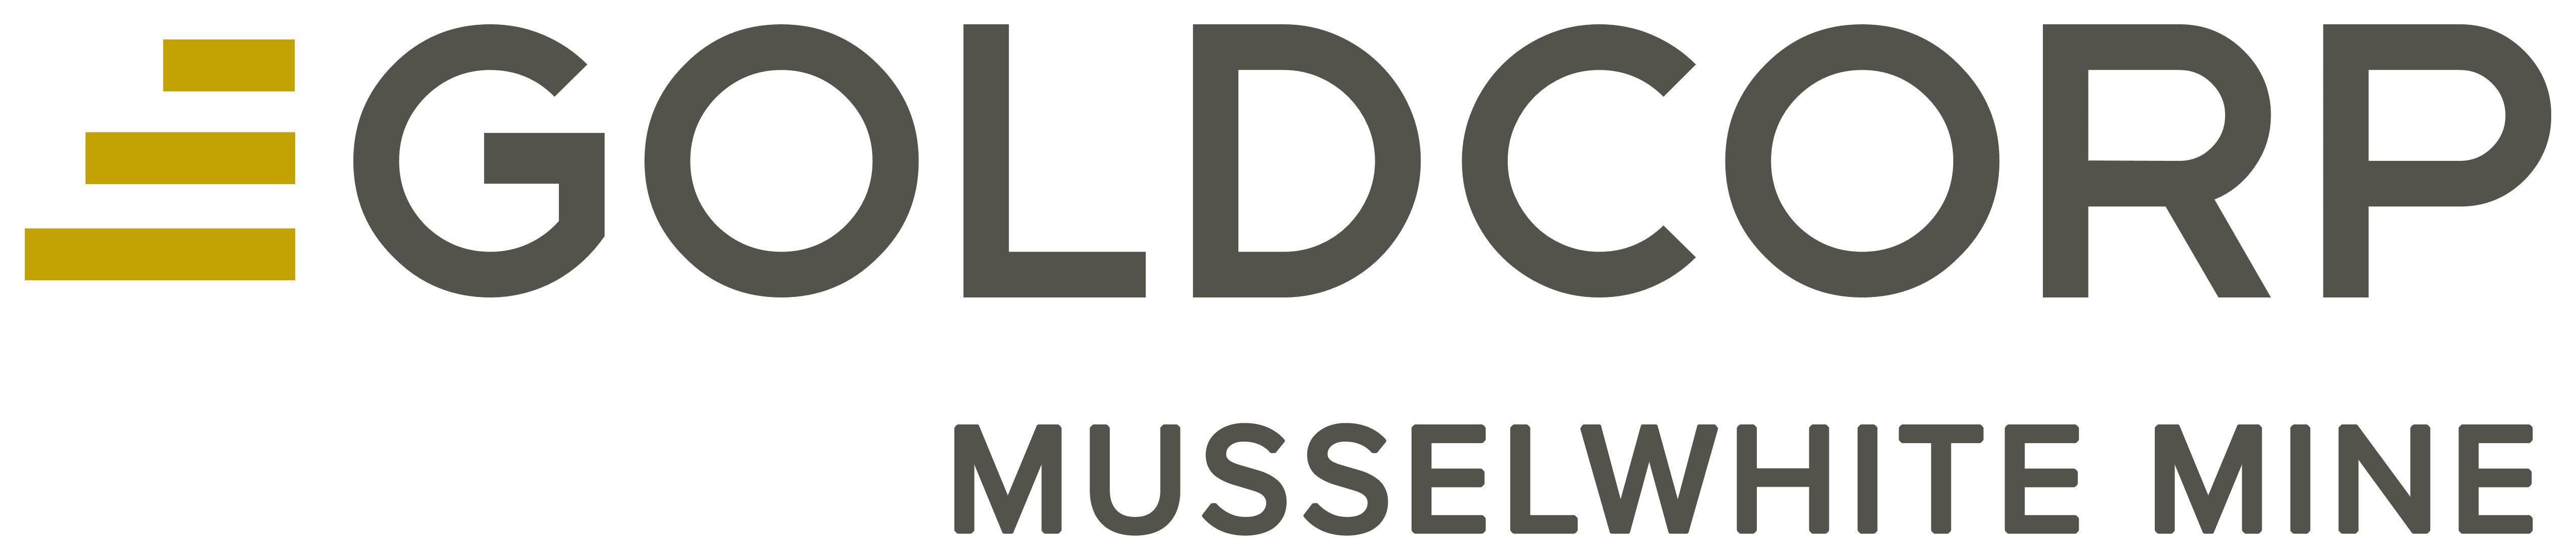 Goldcorp Logo - Goldcorp Musselwhite Mine: - Sudbury.com